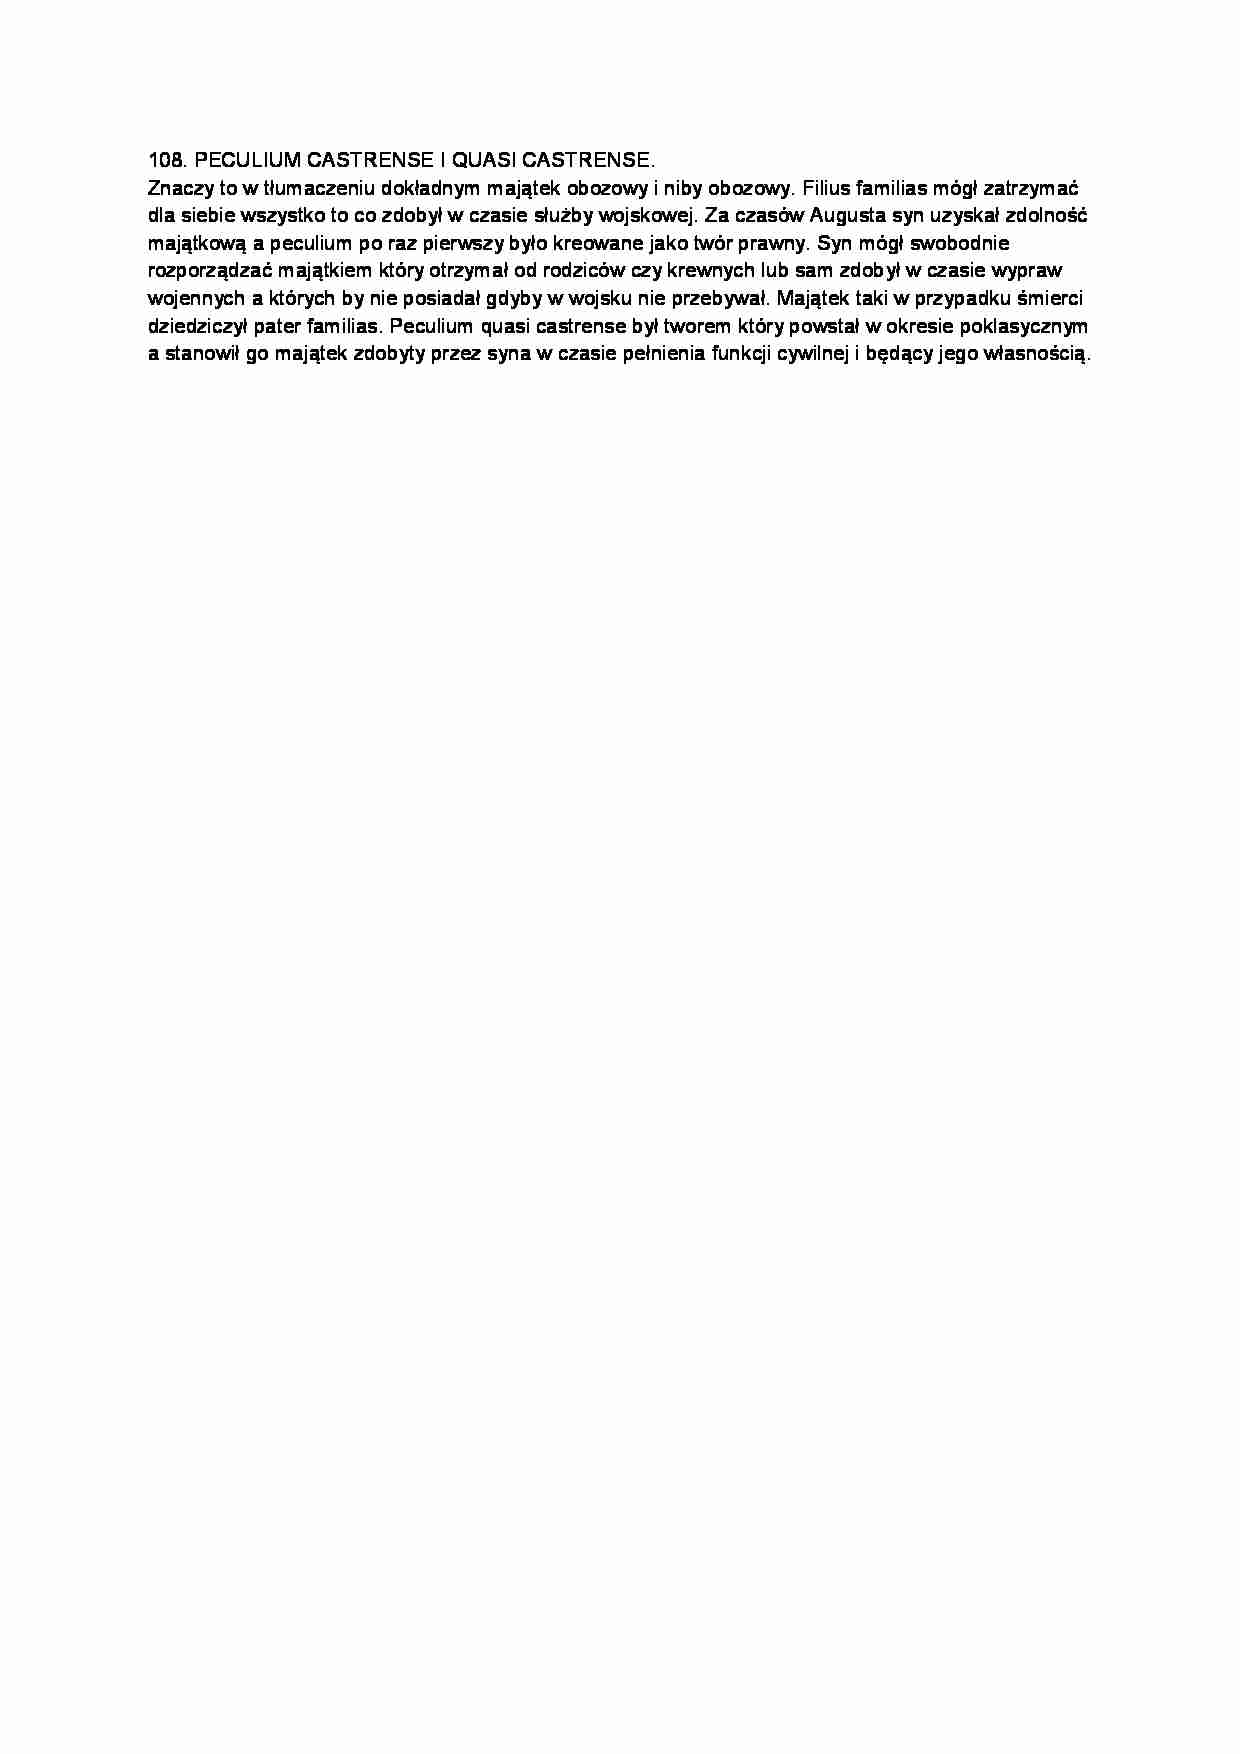 Peculium castrense i quais castrense-opracowanie - strona 1